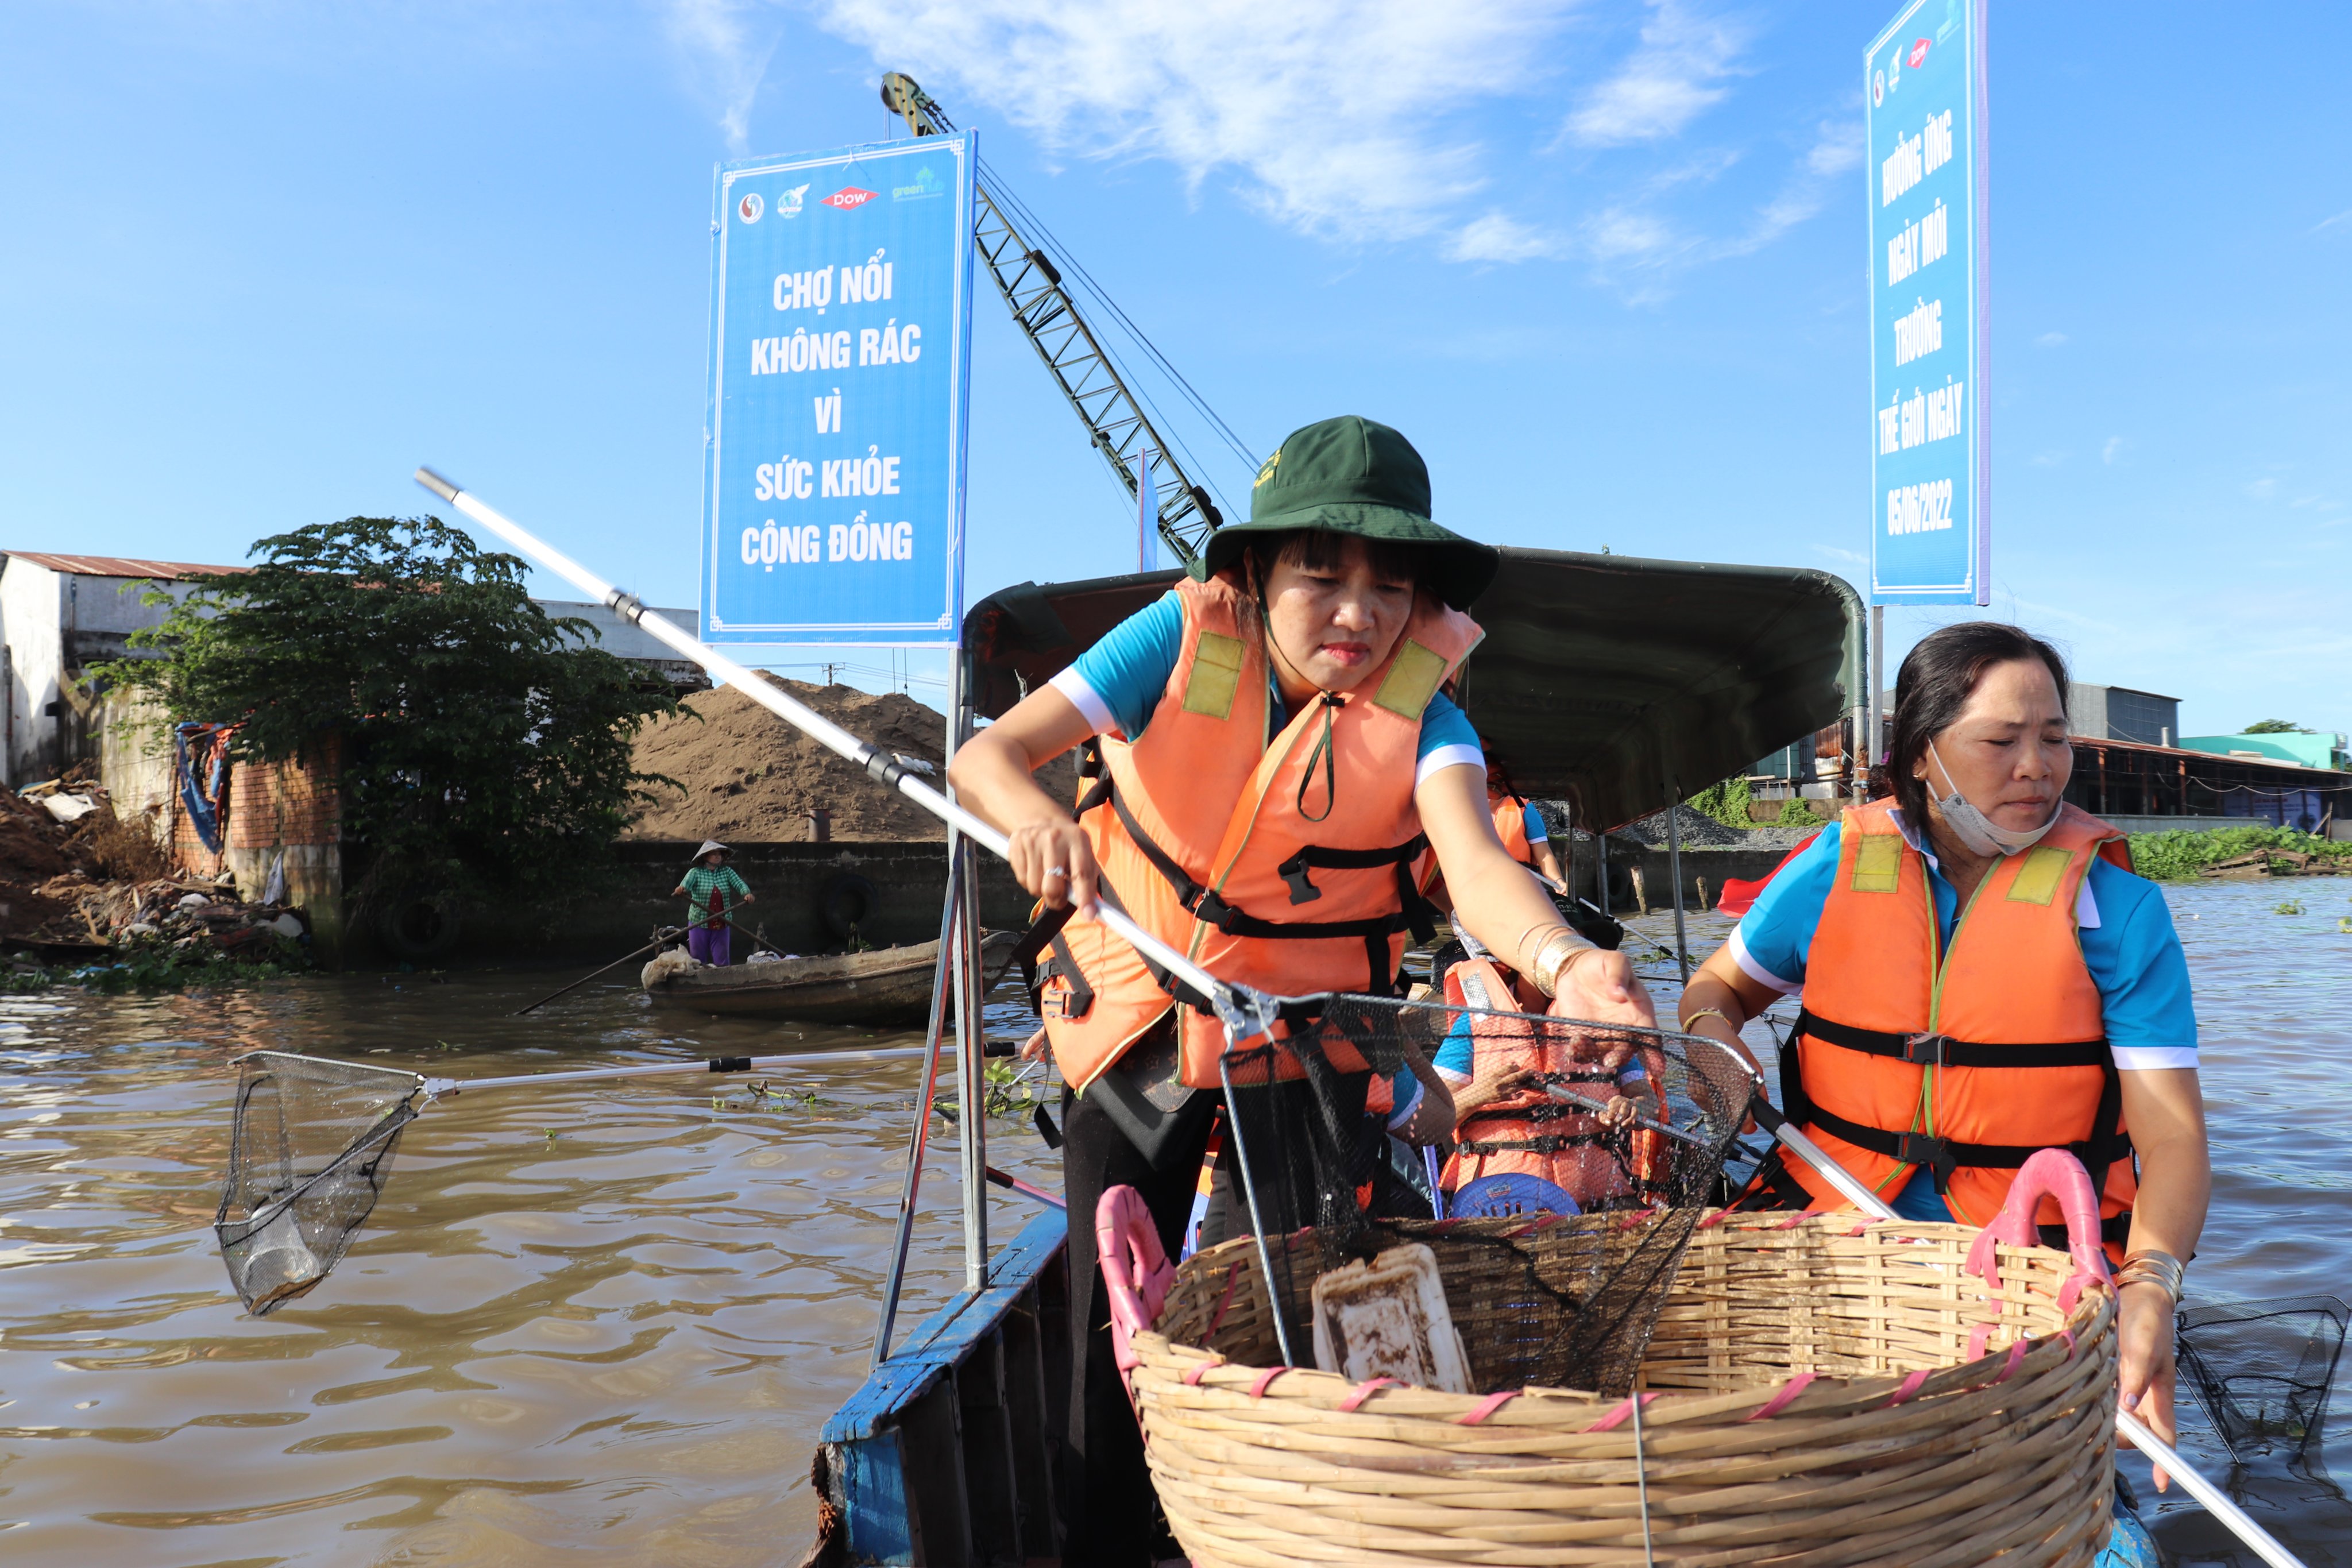 Hội LHPN TP. Cần Thơ tổ chức ra quân dọn vệ sinh môi trường “Vì sông Mekong không rác' tại Chợ nổi Cái Răng.